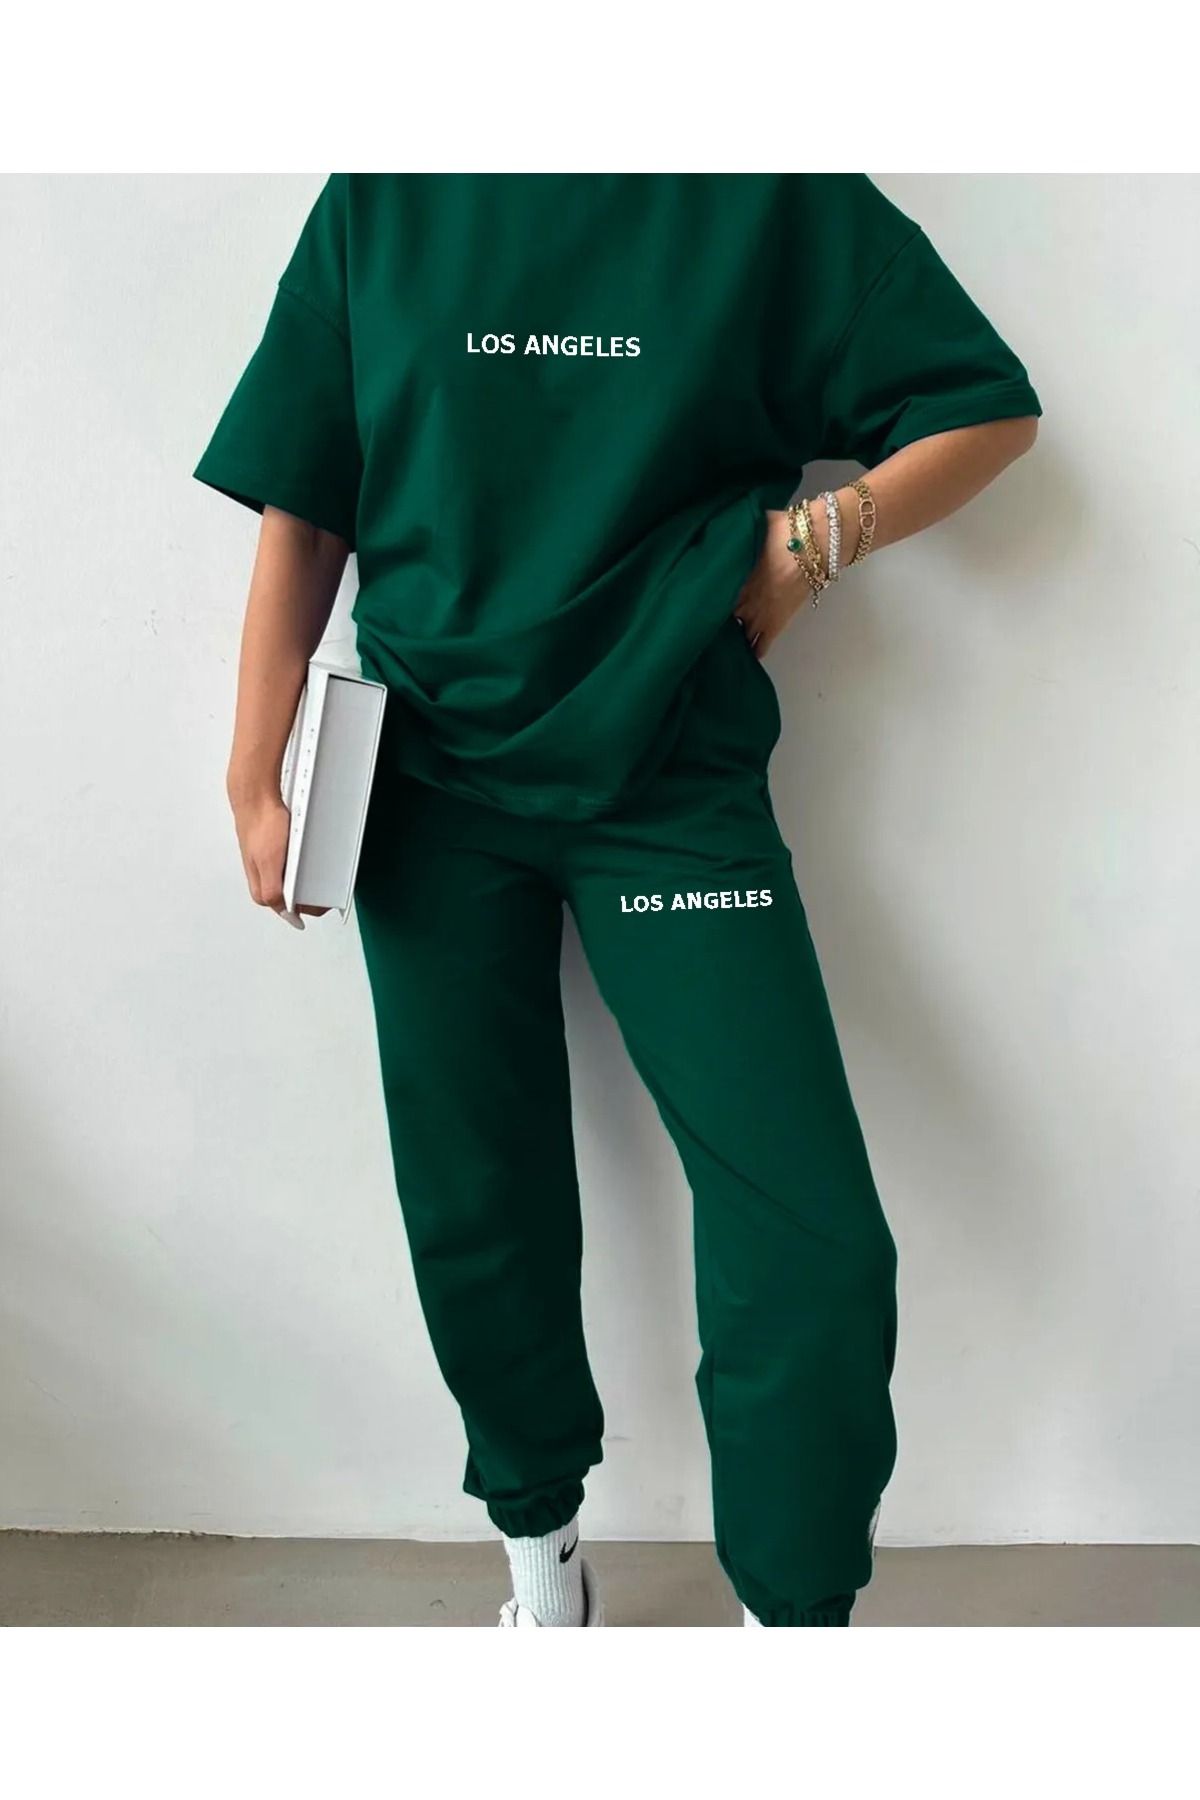 Revasser Unisex Kadın/Erkek LOS ANGELES Özel Baskılı Pamuklu Oversize Jogger T-shirt  Alt Üst Takım